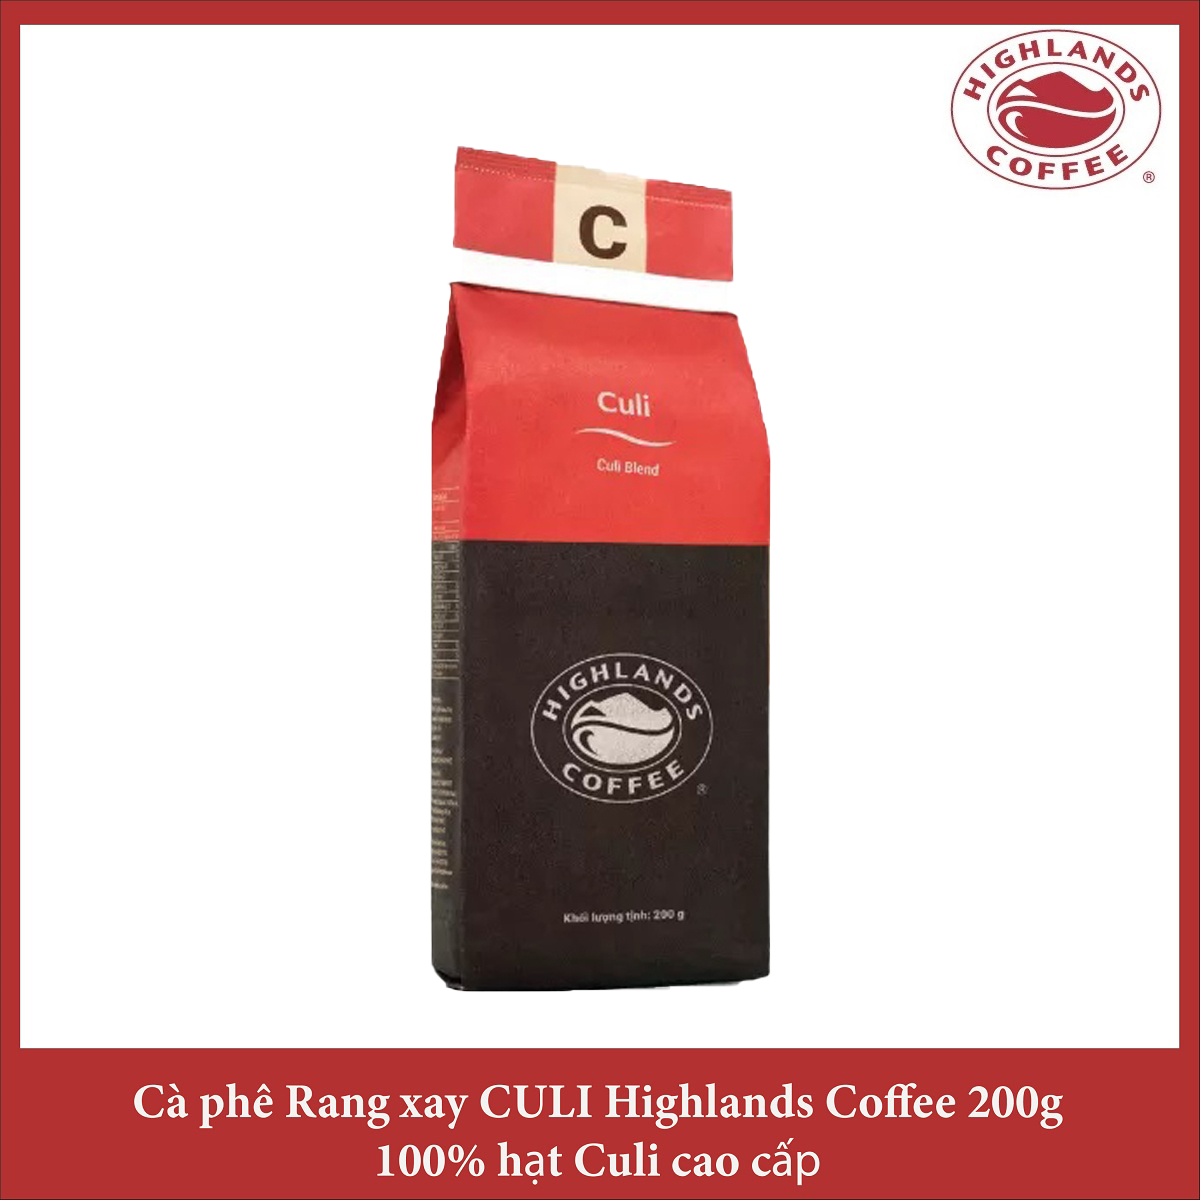 Cà phê rang xay Culi Highlands coffee 200g - Culi Blend